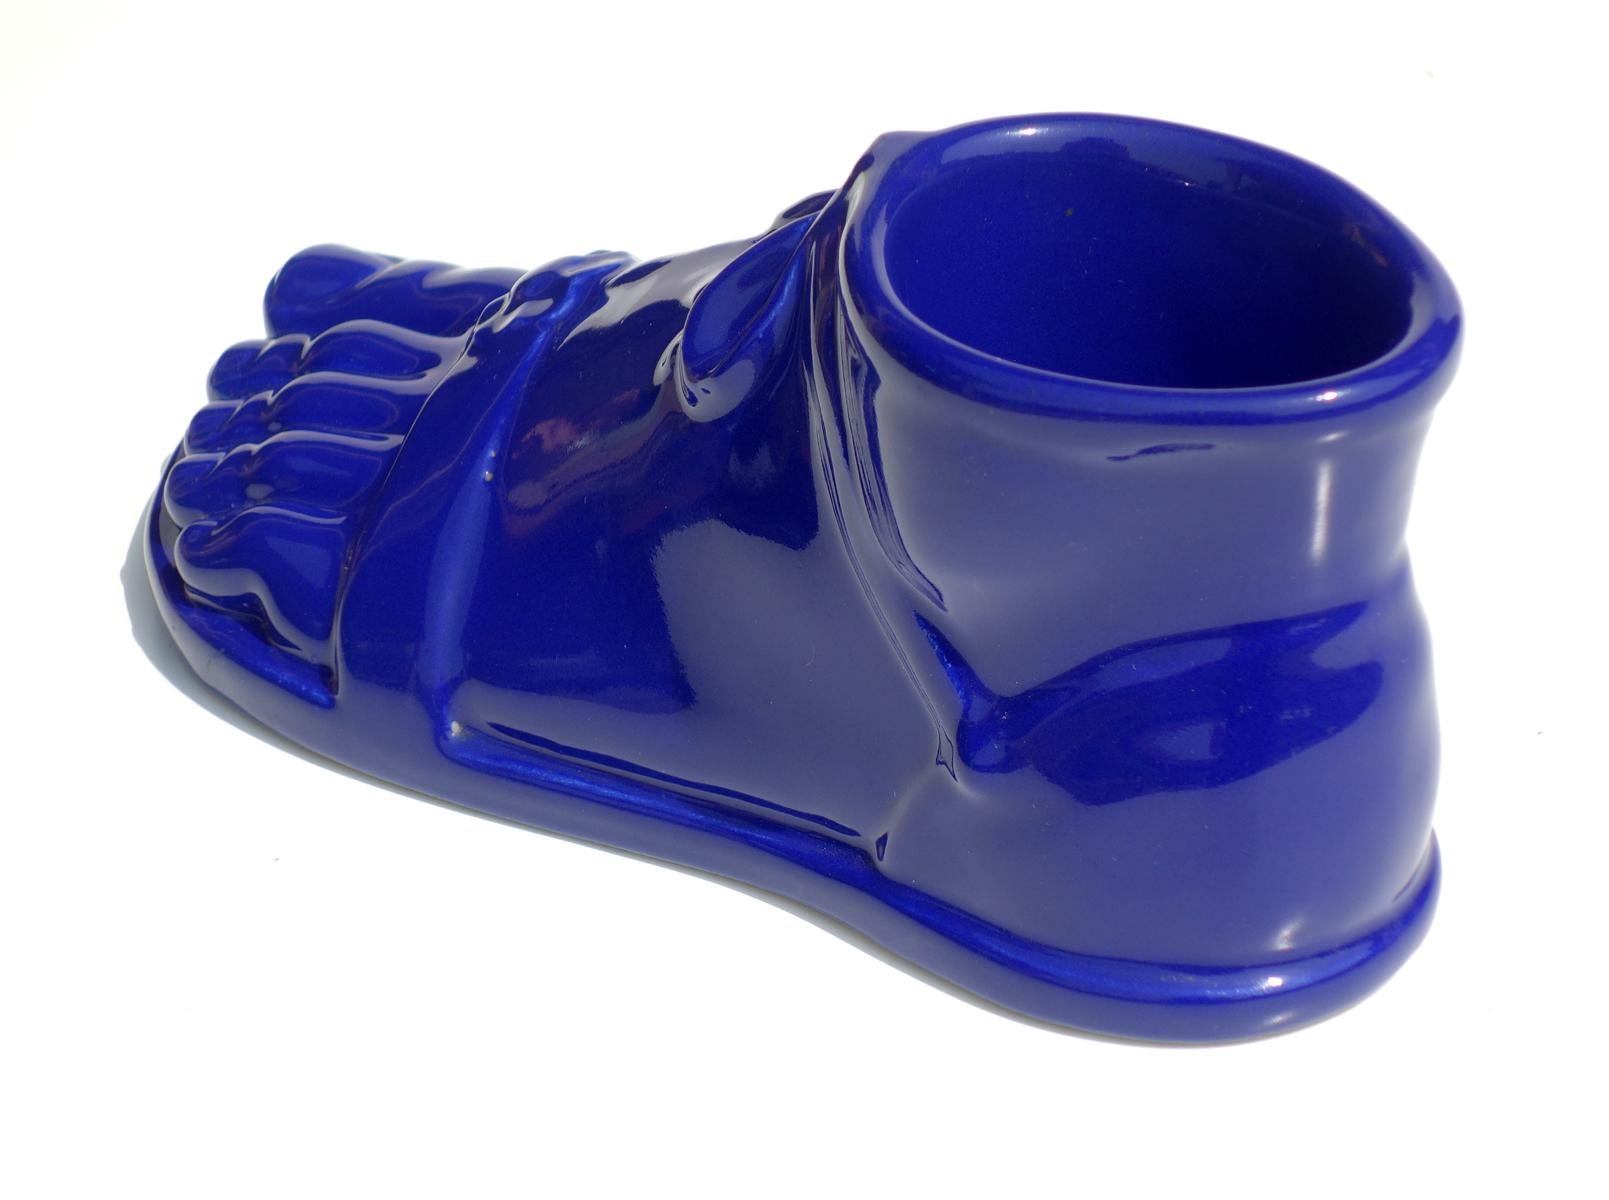 1960s Piero Fornasetti Roman Foot Italian Design Blue Pottery For Sale 1